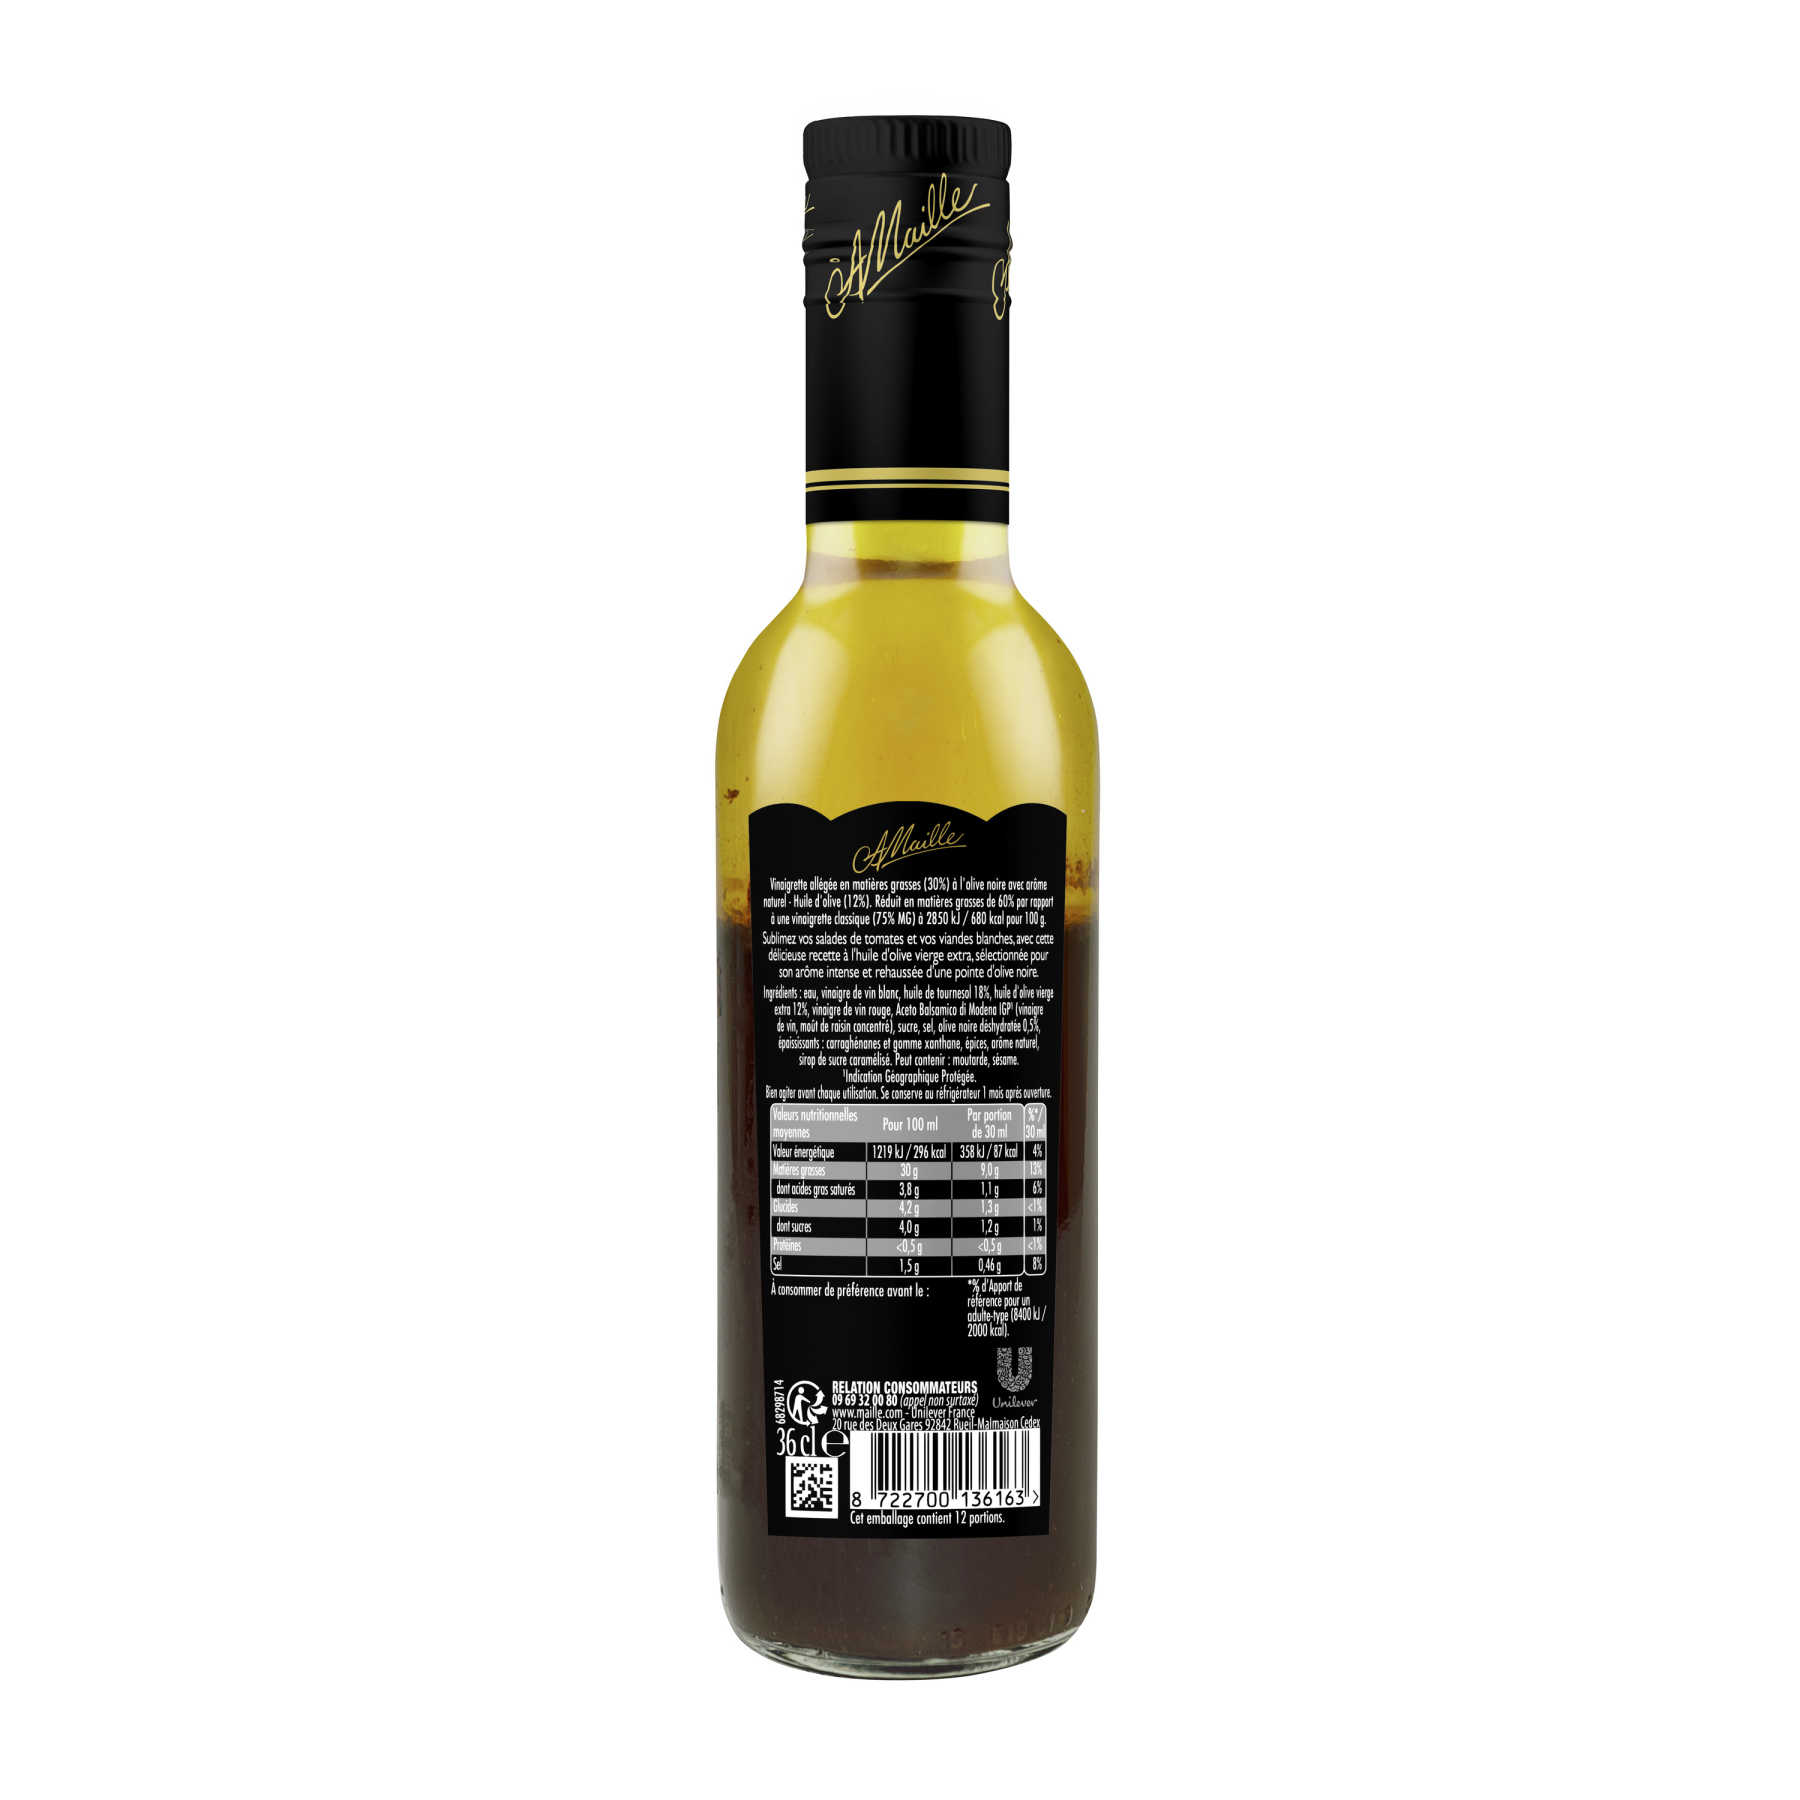 Maille Vinaigrette Légère Huile d'Olive (12%) Pointe d'Olive Noire 36cl, backend